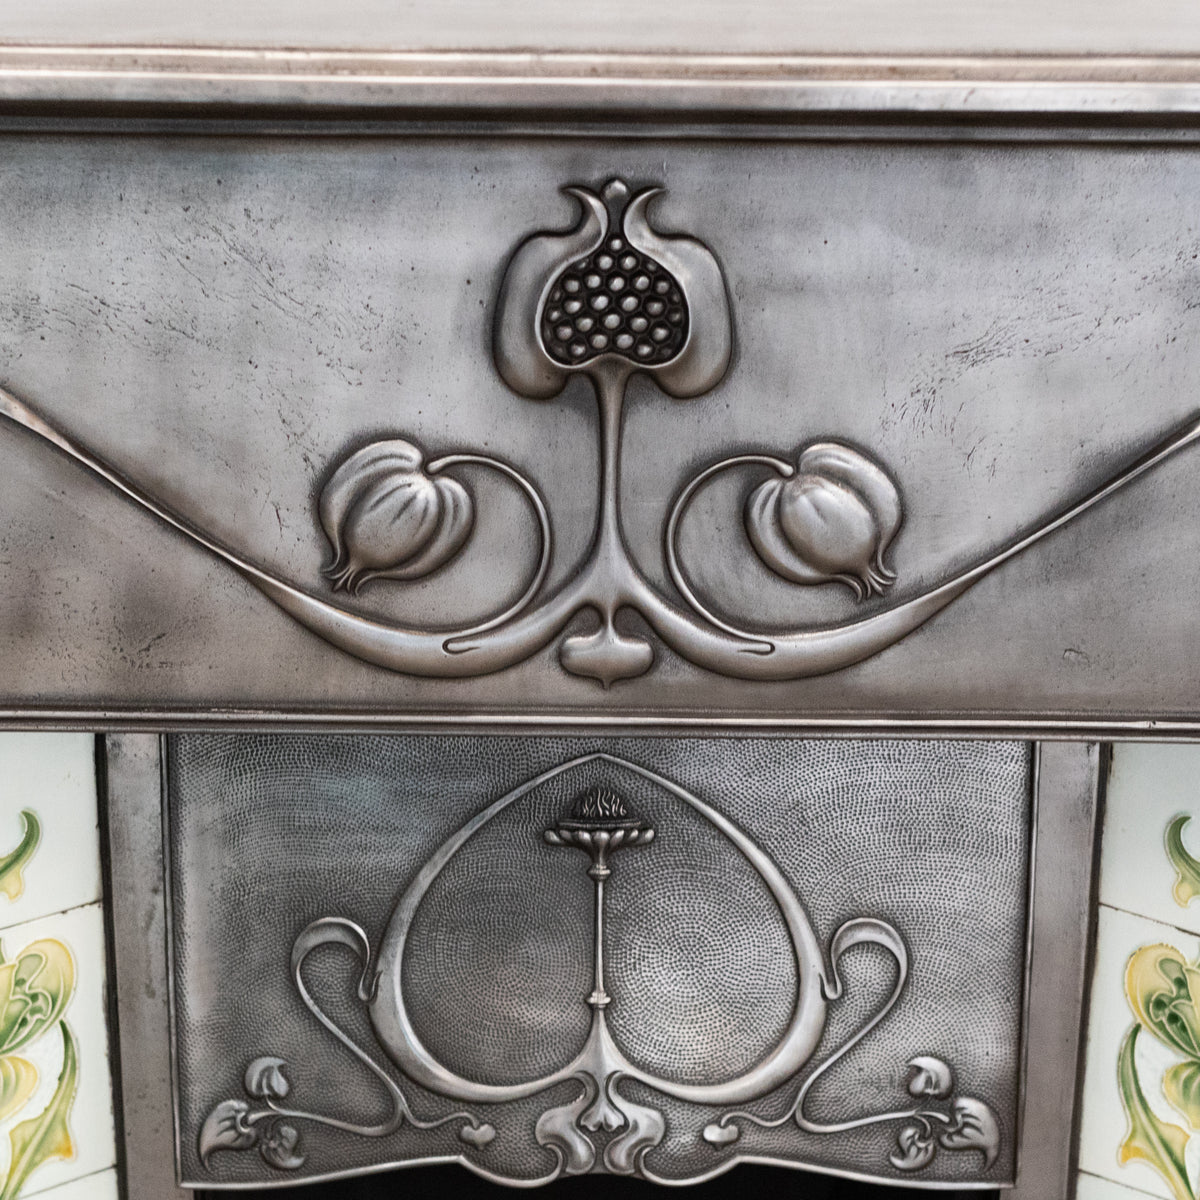 Antique Art Nouveau Polished Cast Iron Tiled Fireplace | The Architectural Forum